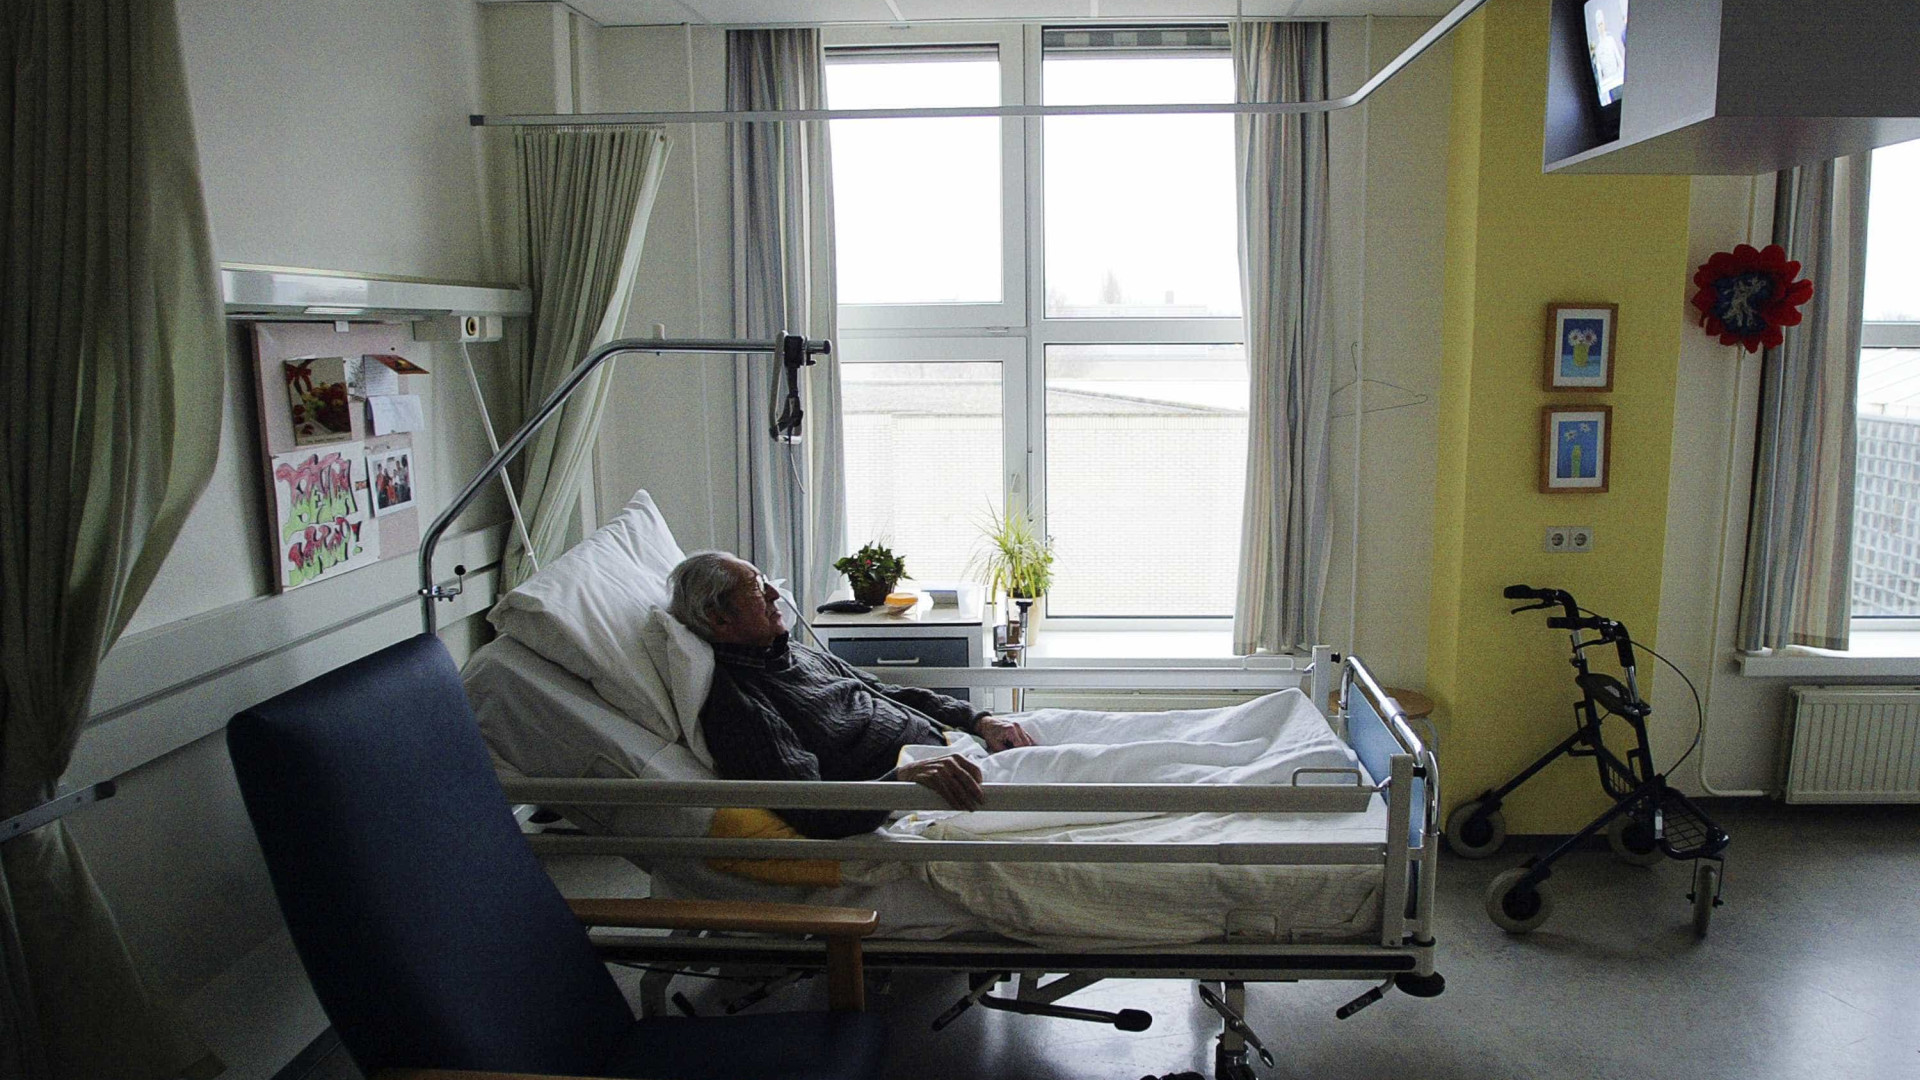 Holanda quer ampliar direito à eutanásia a pessoas saudáveis